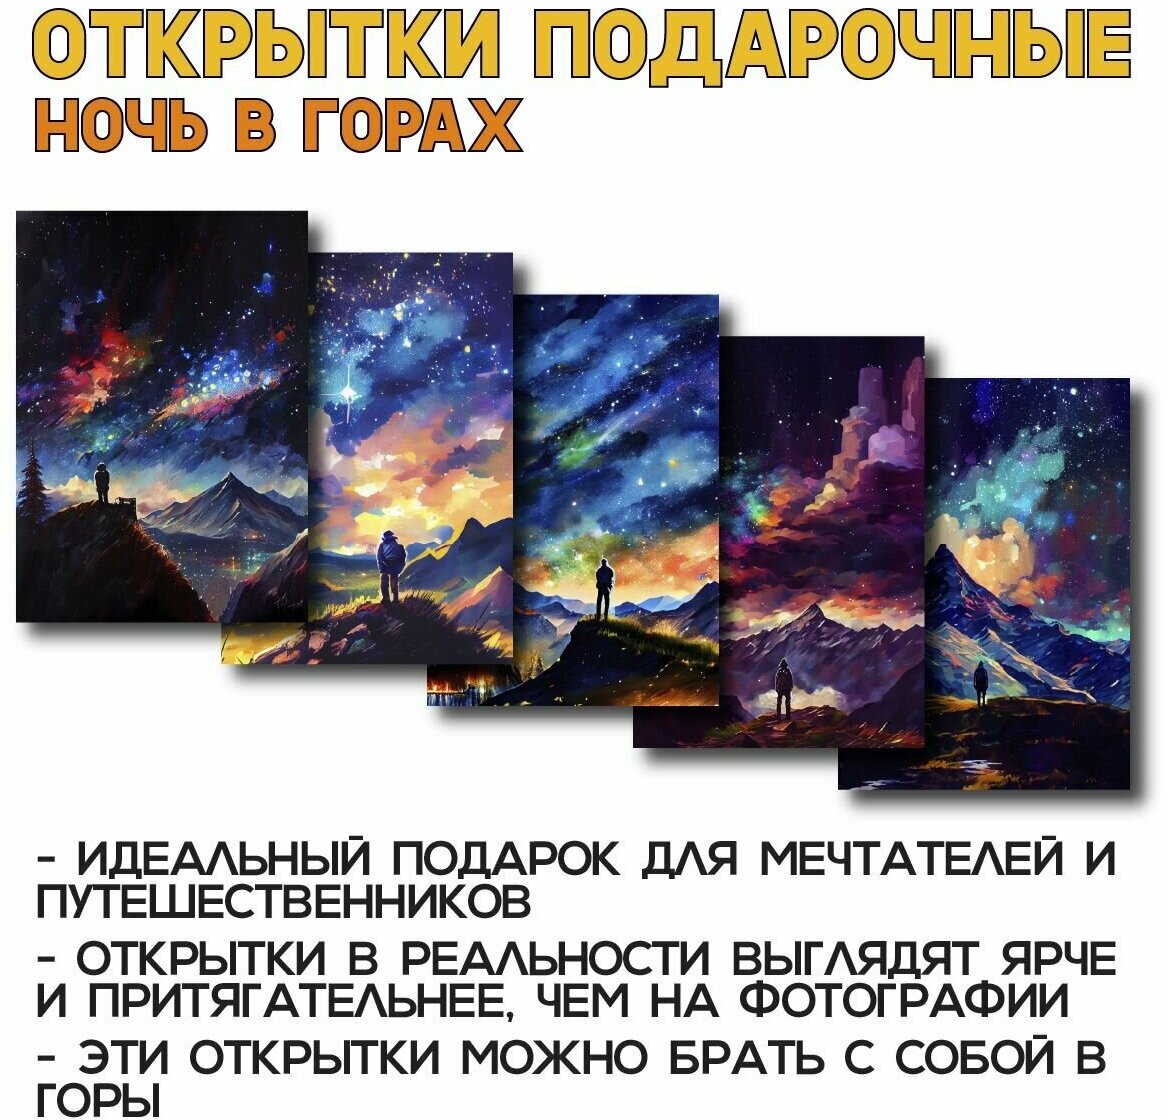 "Ночь в горах" - премиум-набор из 5 открыток, совершенный выбор для энтузиастов природы, путешественников и искателей уникальных подарков